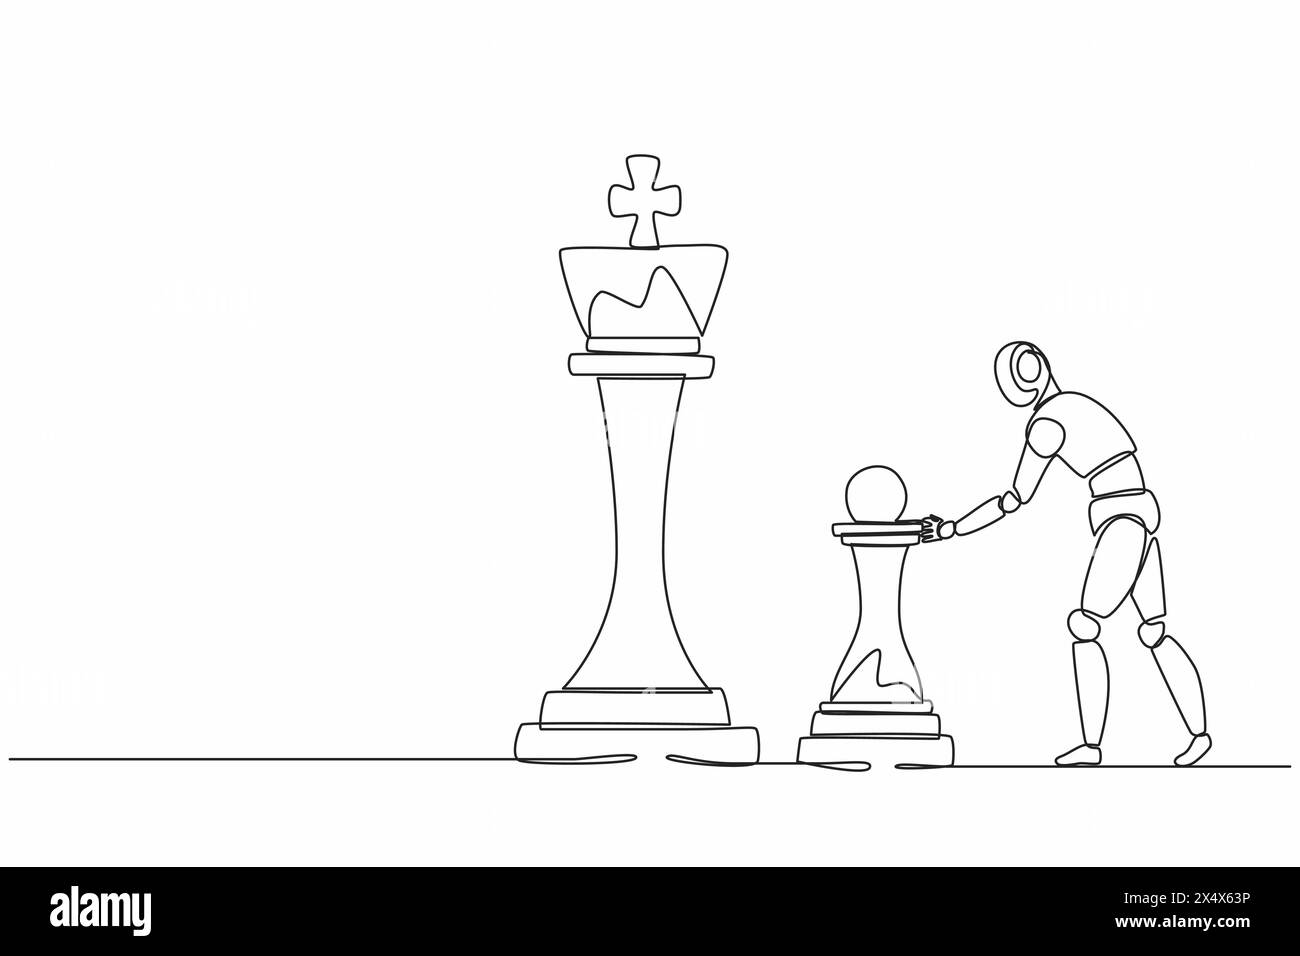 Einzelne kontinuierliche Linienziehroboter schieben riesige Schachfiguren, um den König zu besiegen. Moderne Robotik künstliche Intelligenz. Elektroniktechnik Stock Vektor